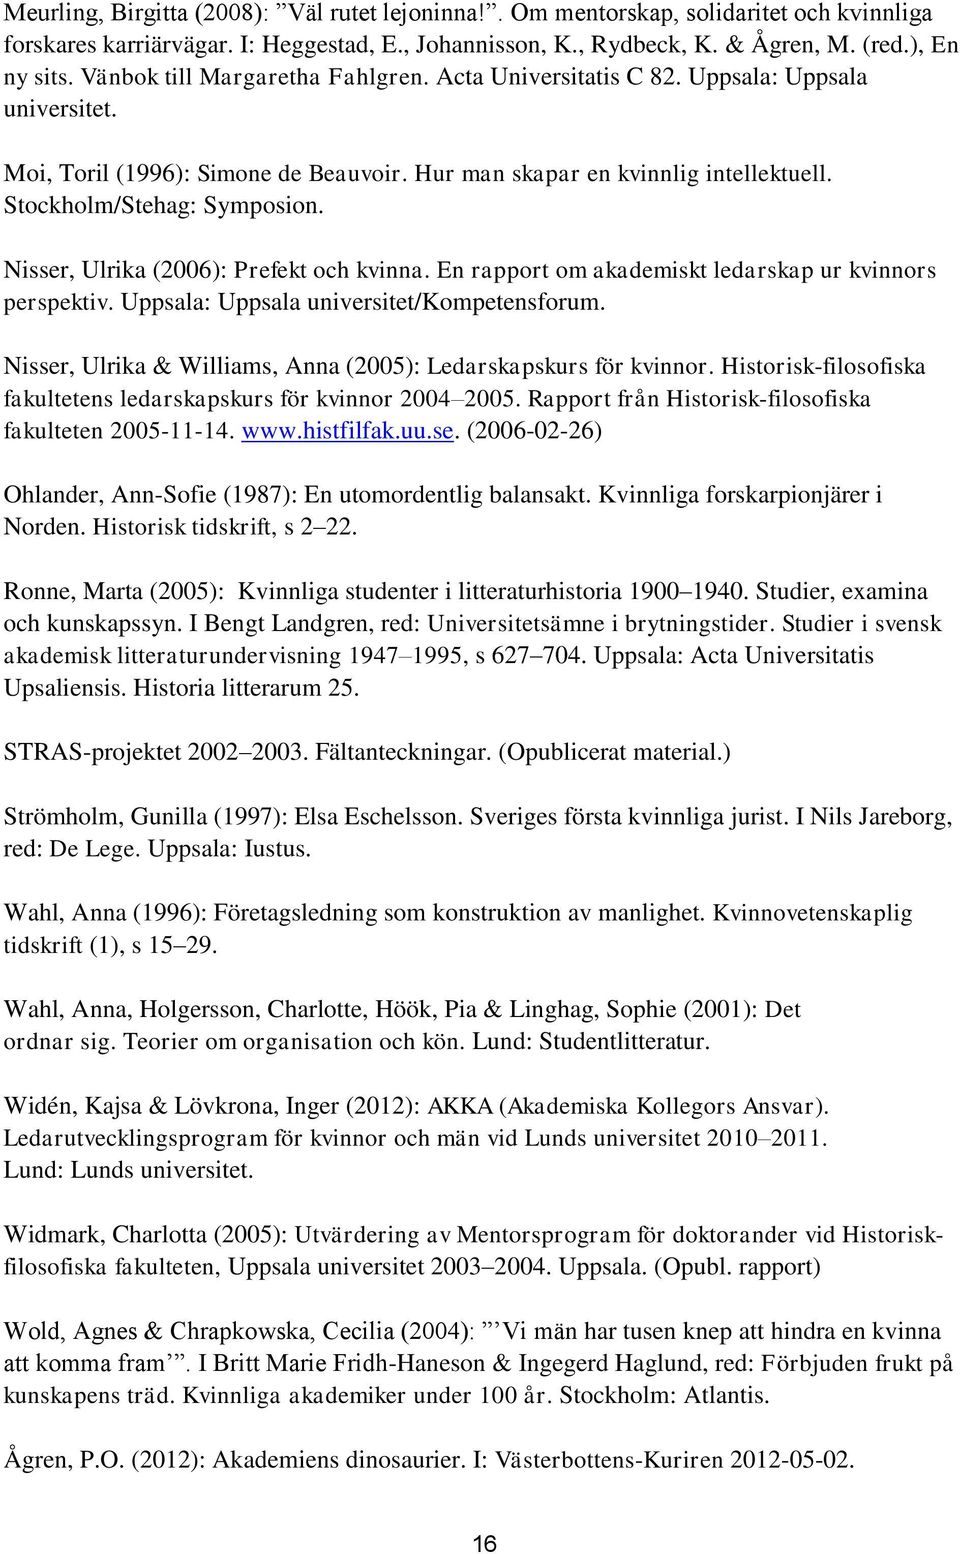 Nisser, Ulrika (2006): Prefekt och kvinna. En rapport om akademiskt ledarskap ur kvinnors perspektiv. Uppsala: Uppsala universitet/kompetensforum.